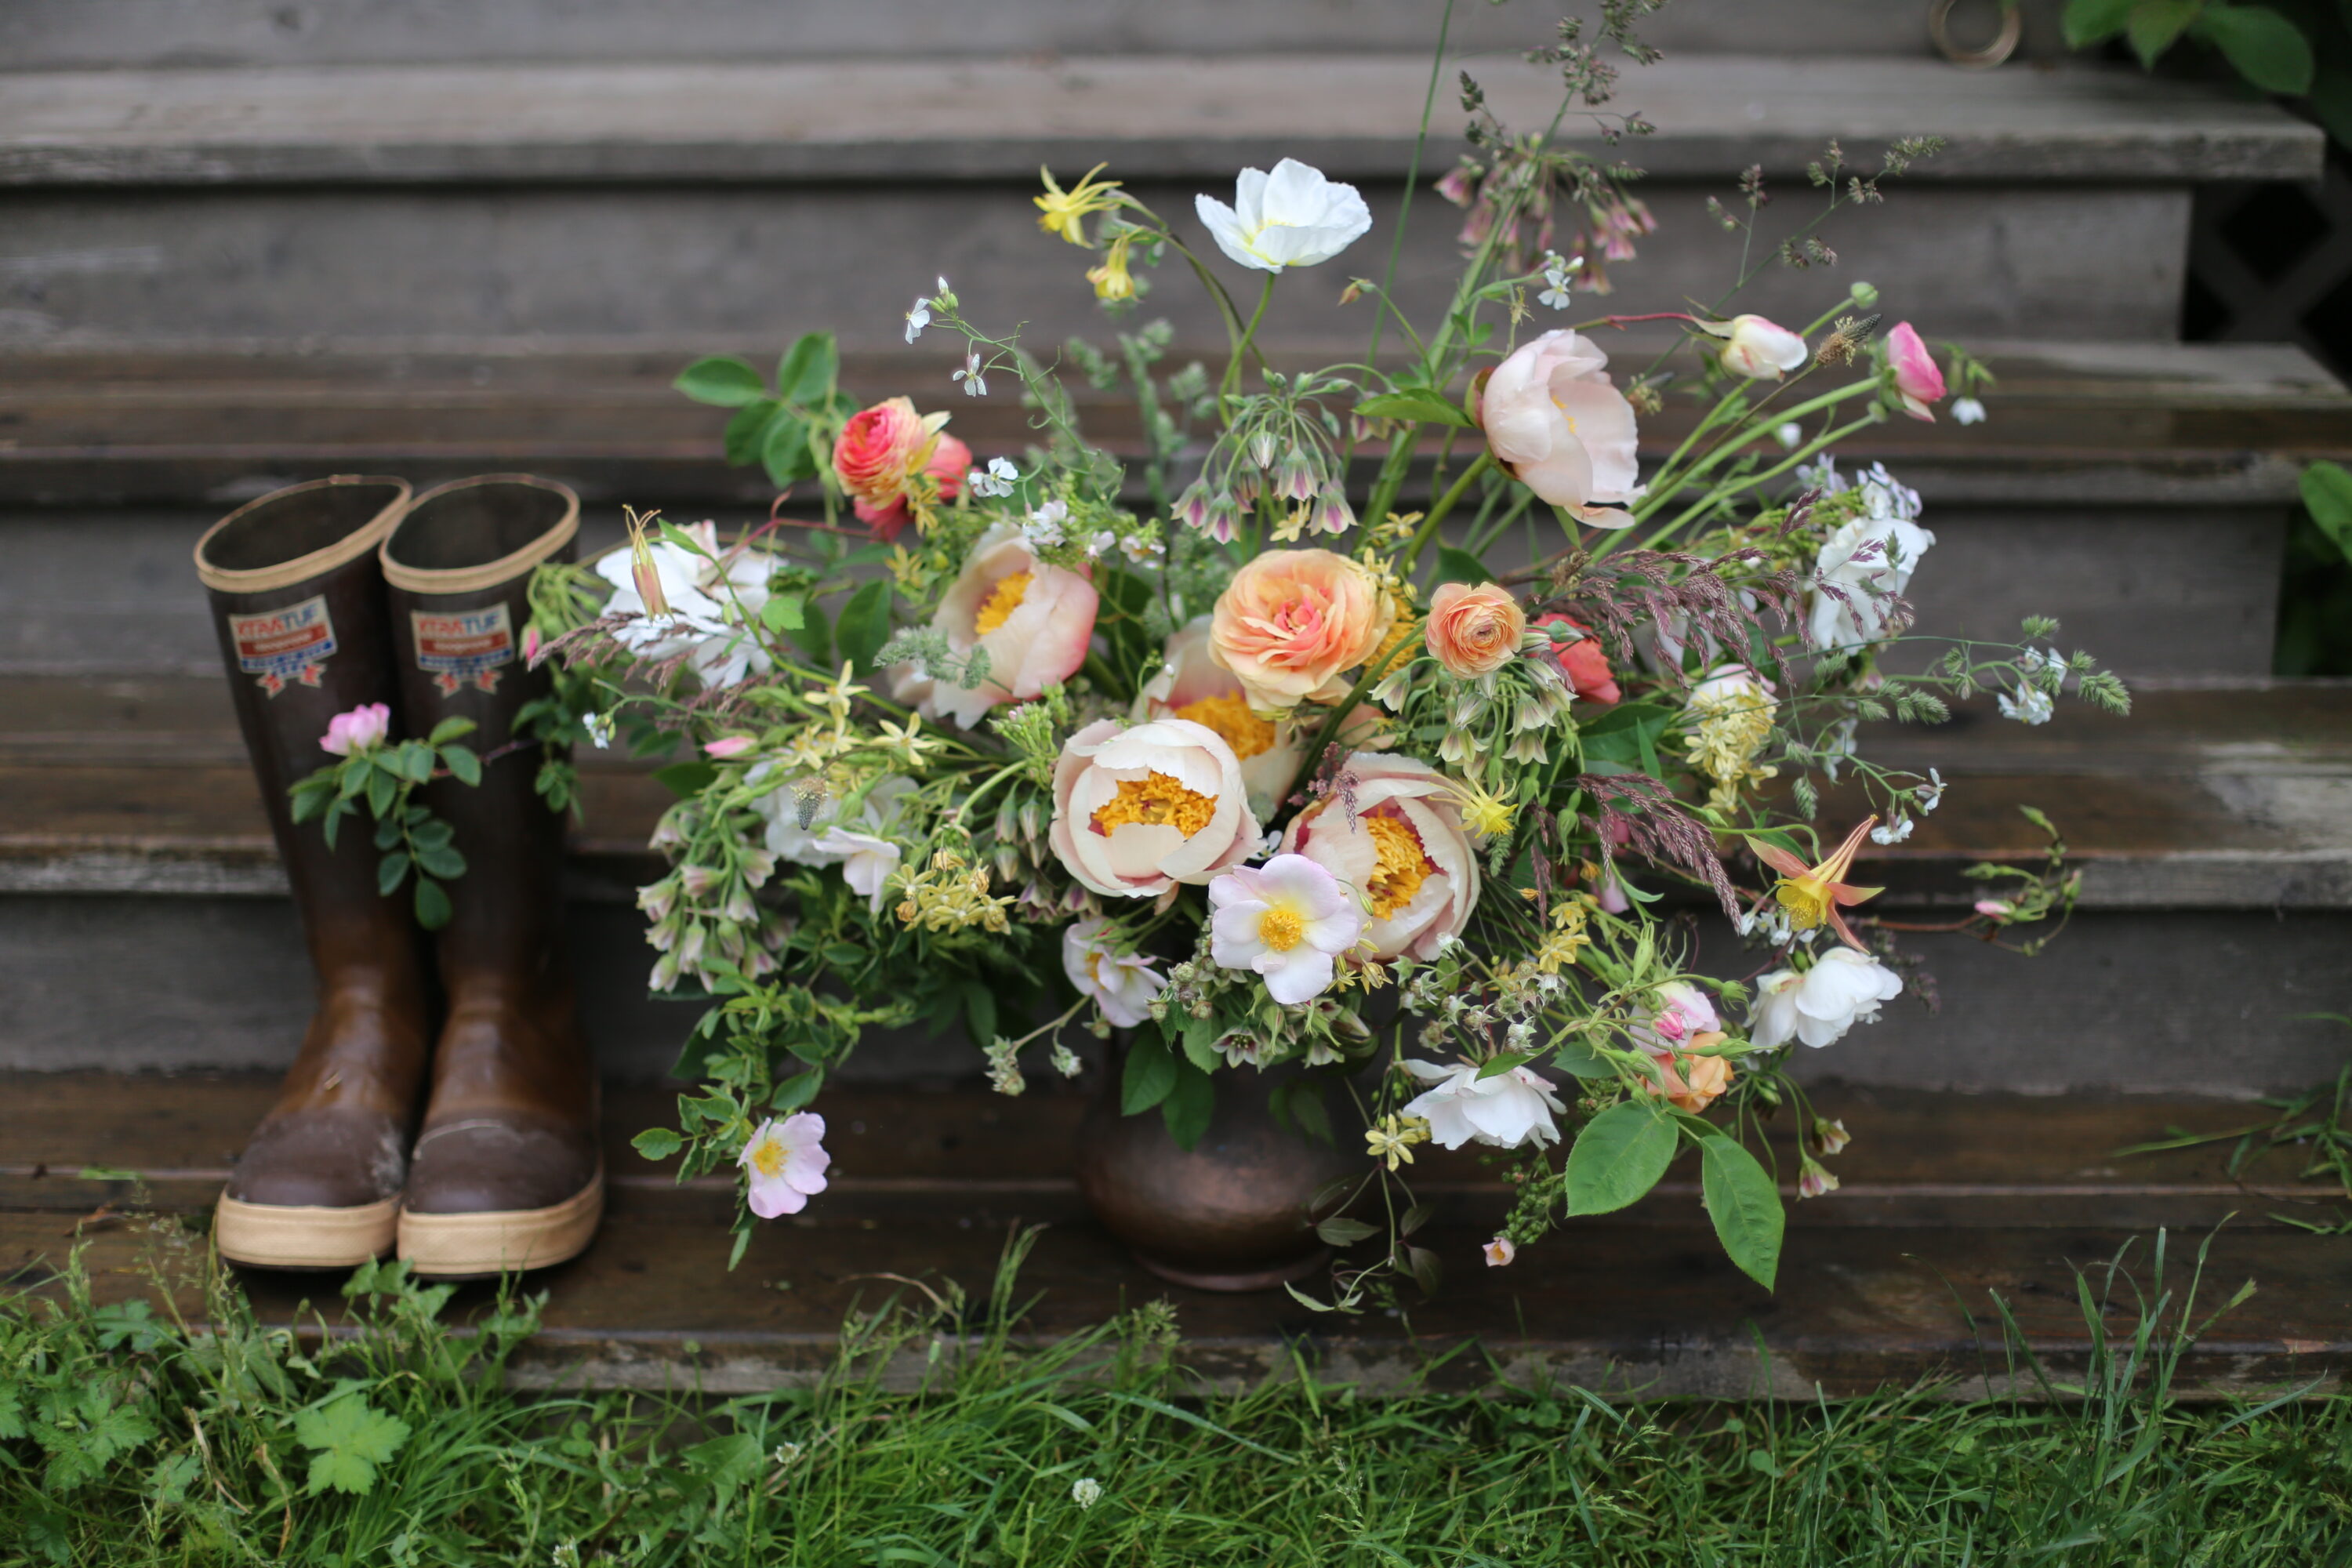 A pair of boots next to a flower arrangement